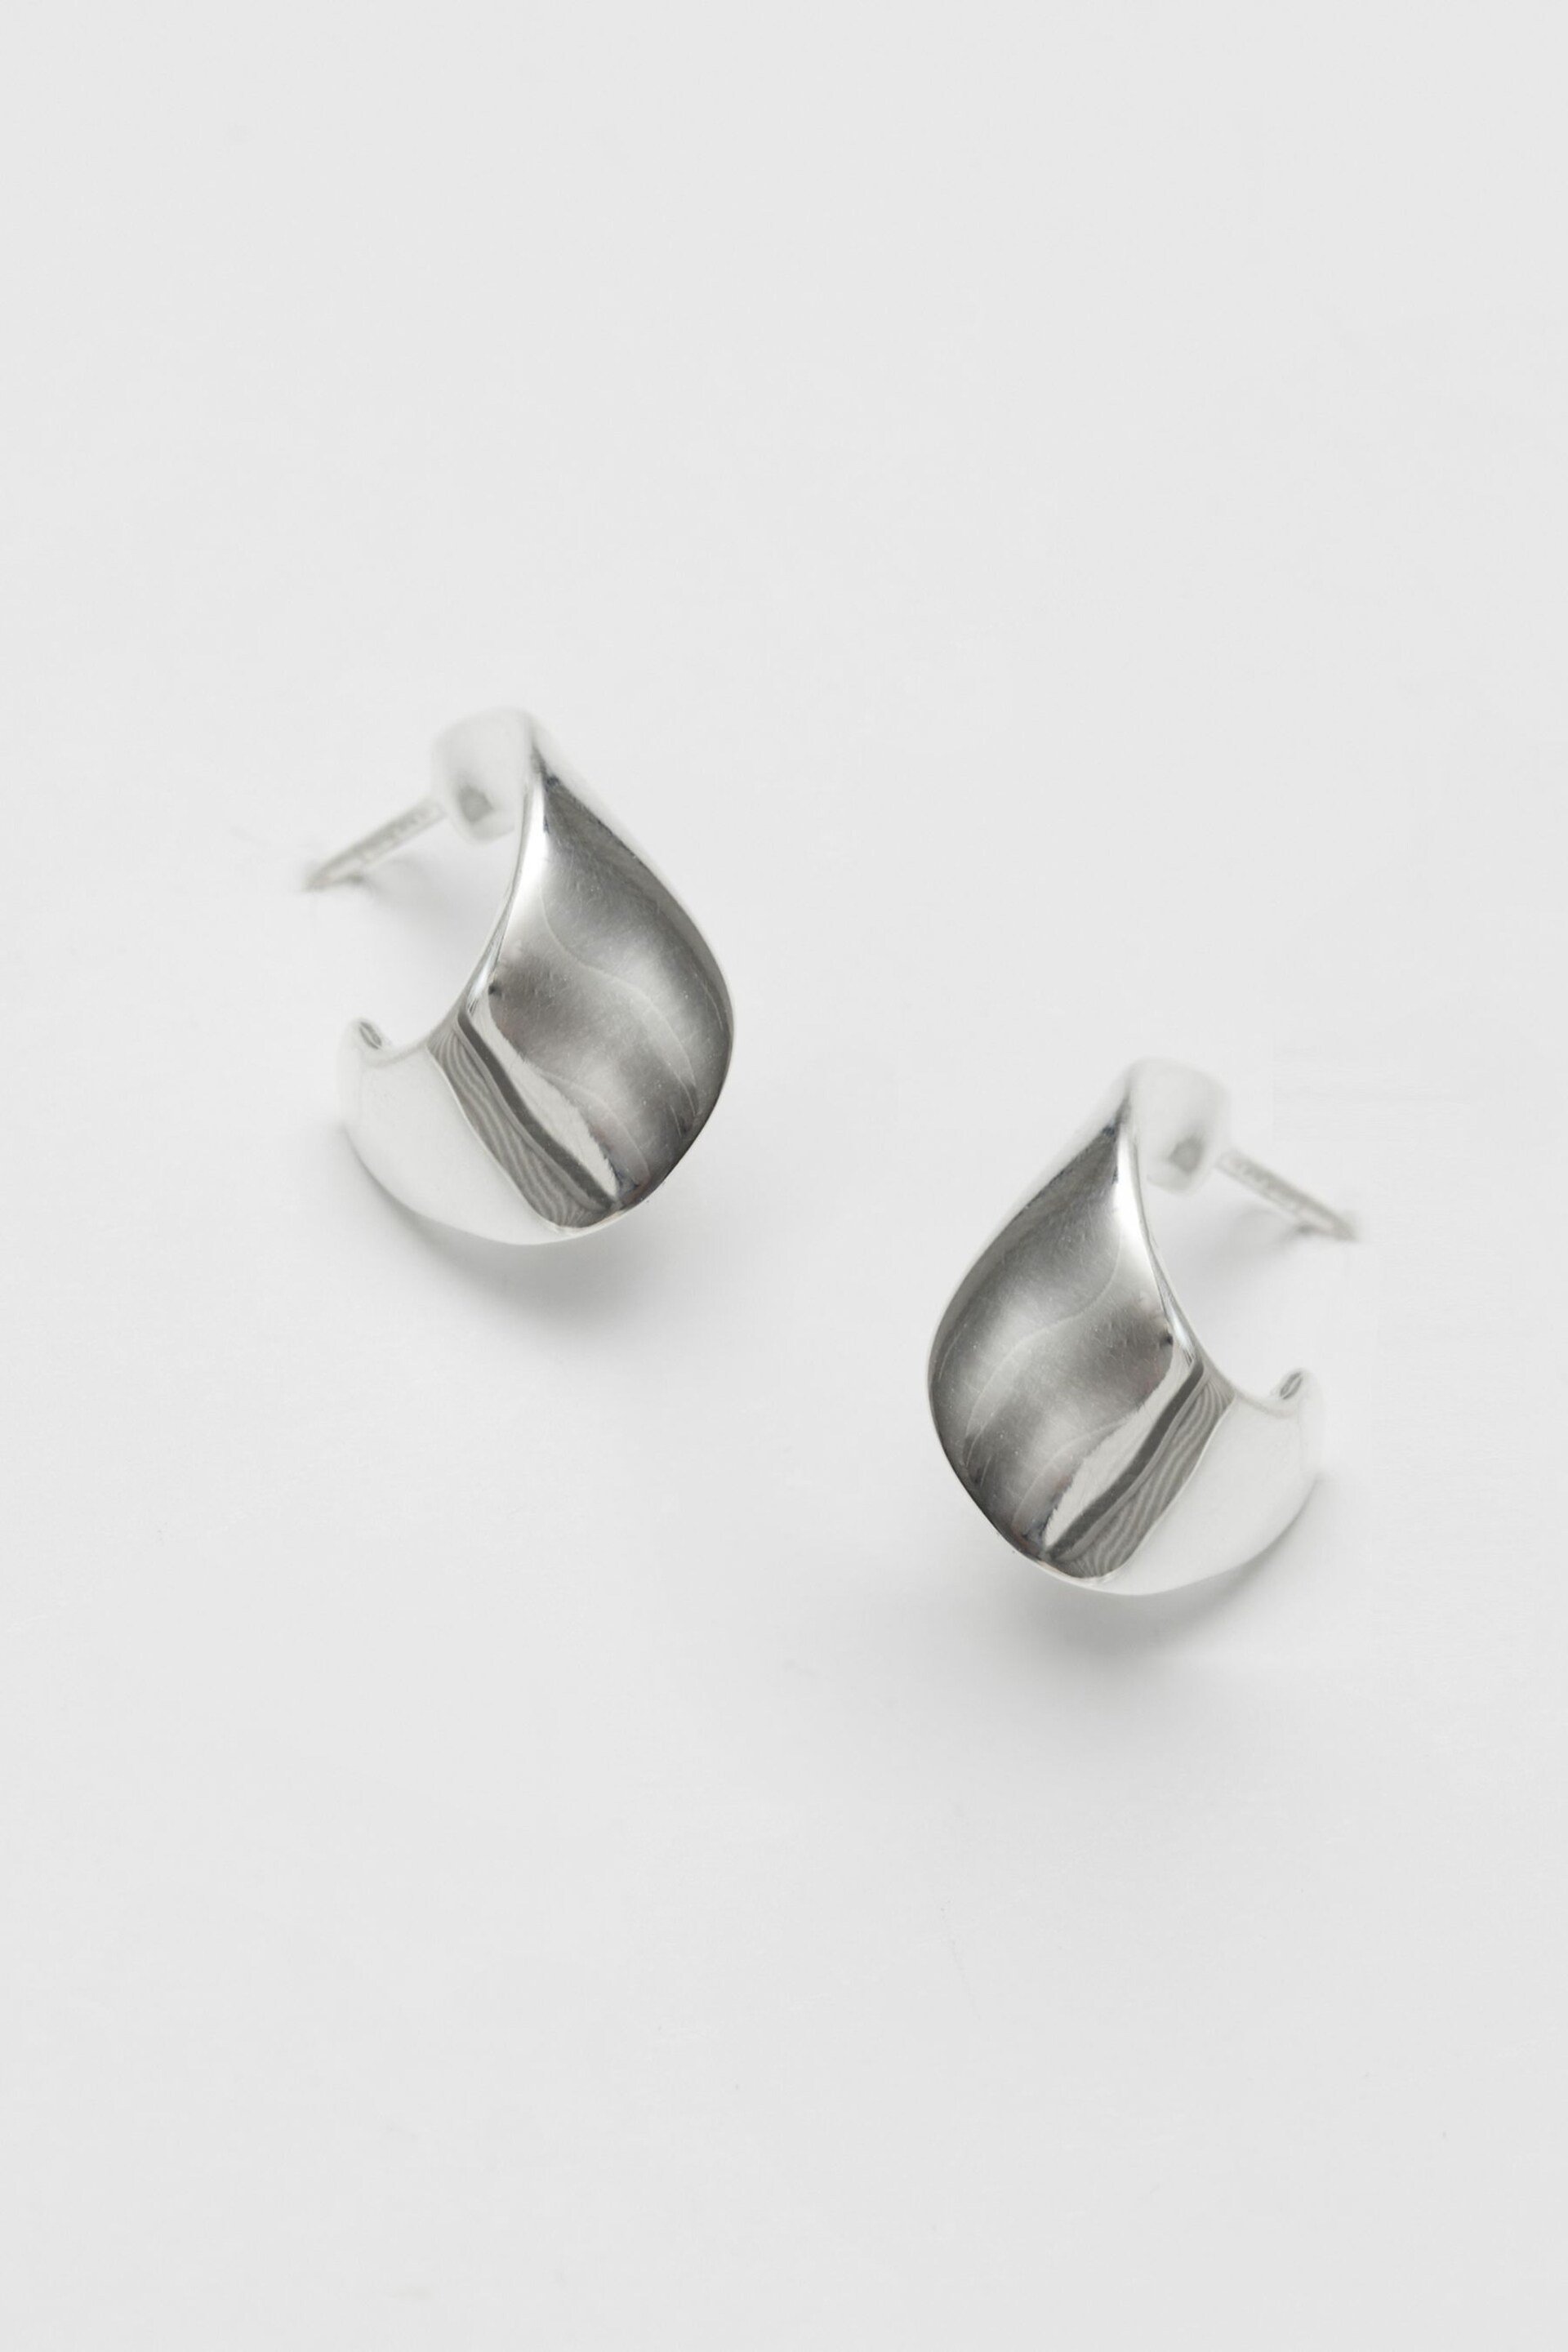 Simply Silver Sterling Silver 925 Clean Polished Twist Hoop Earrings - Image 1 of 3